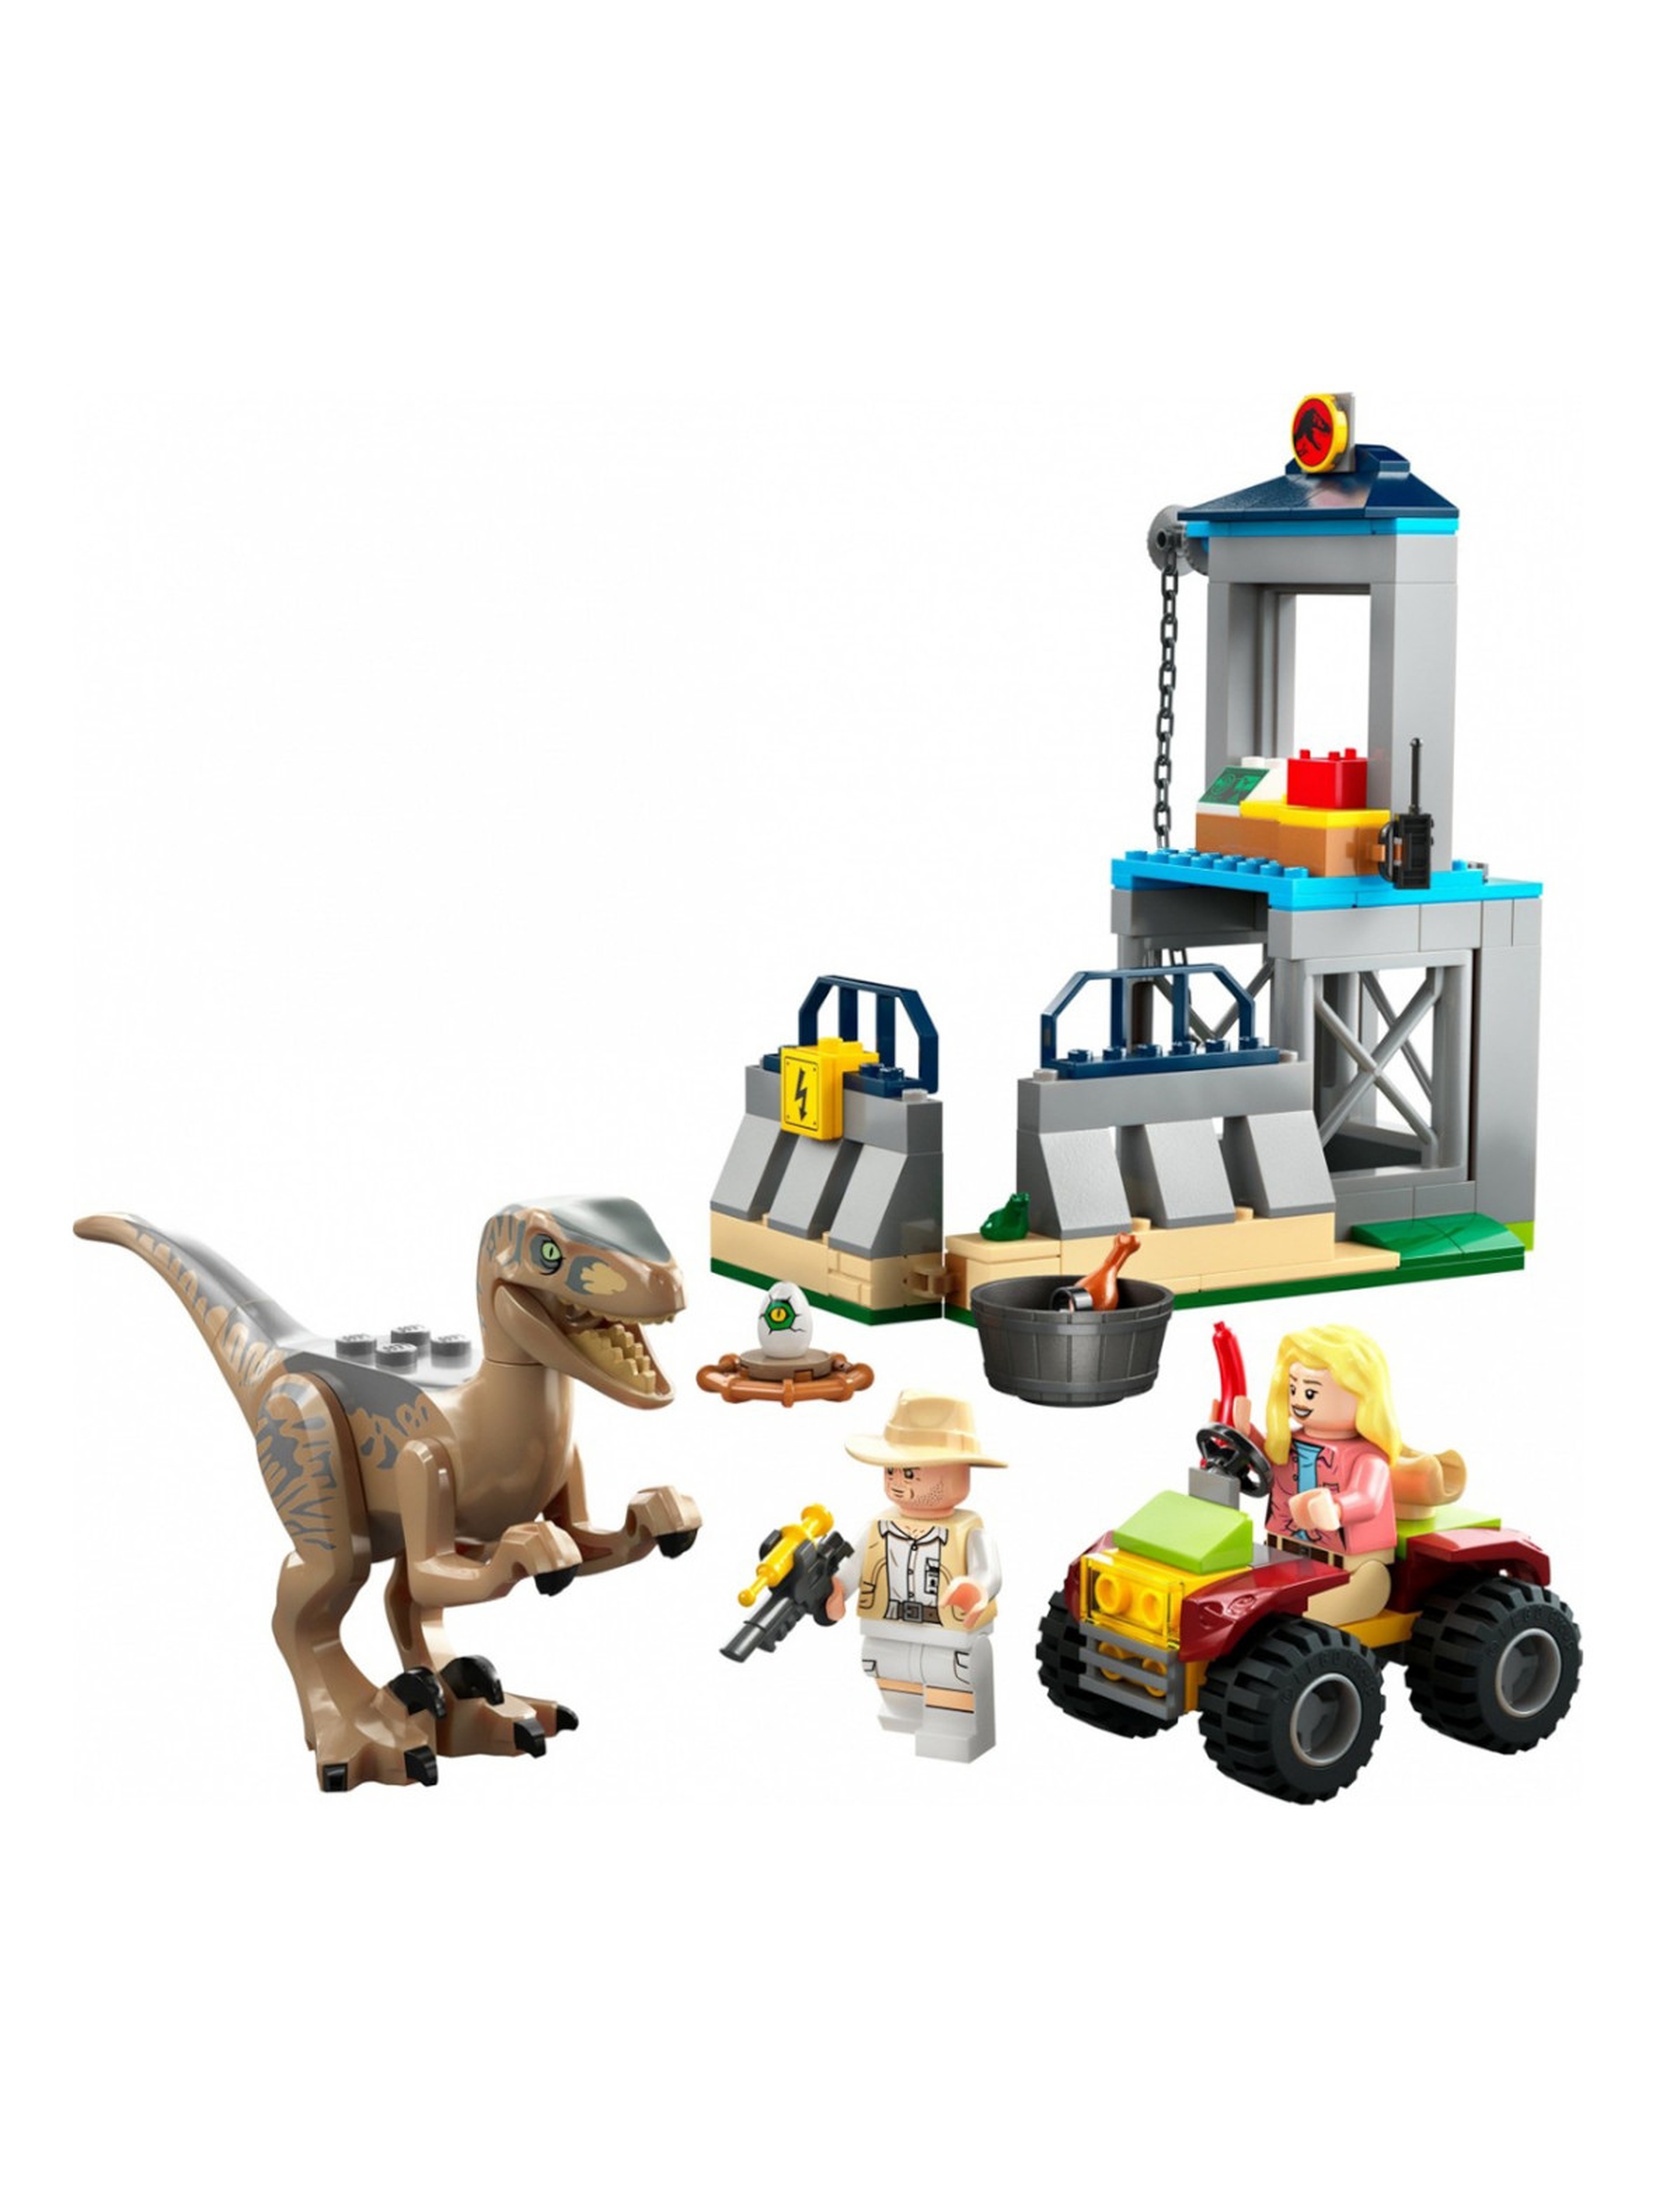 Klocki LEGO Jurassic World 76957 Ucieczka welociraptora - 137 elementy, wiek 4 +